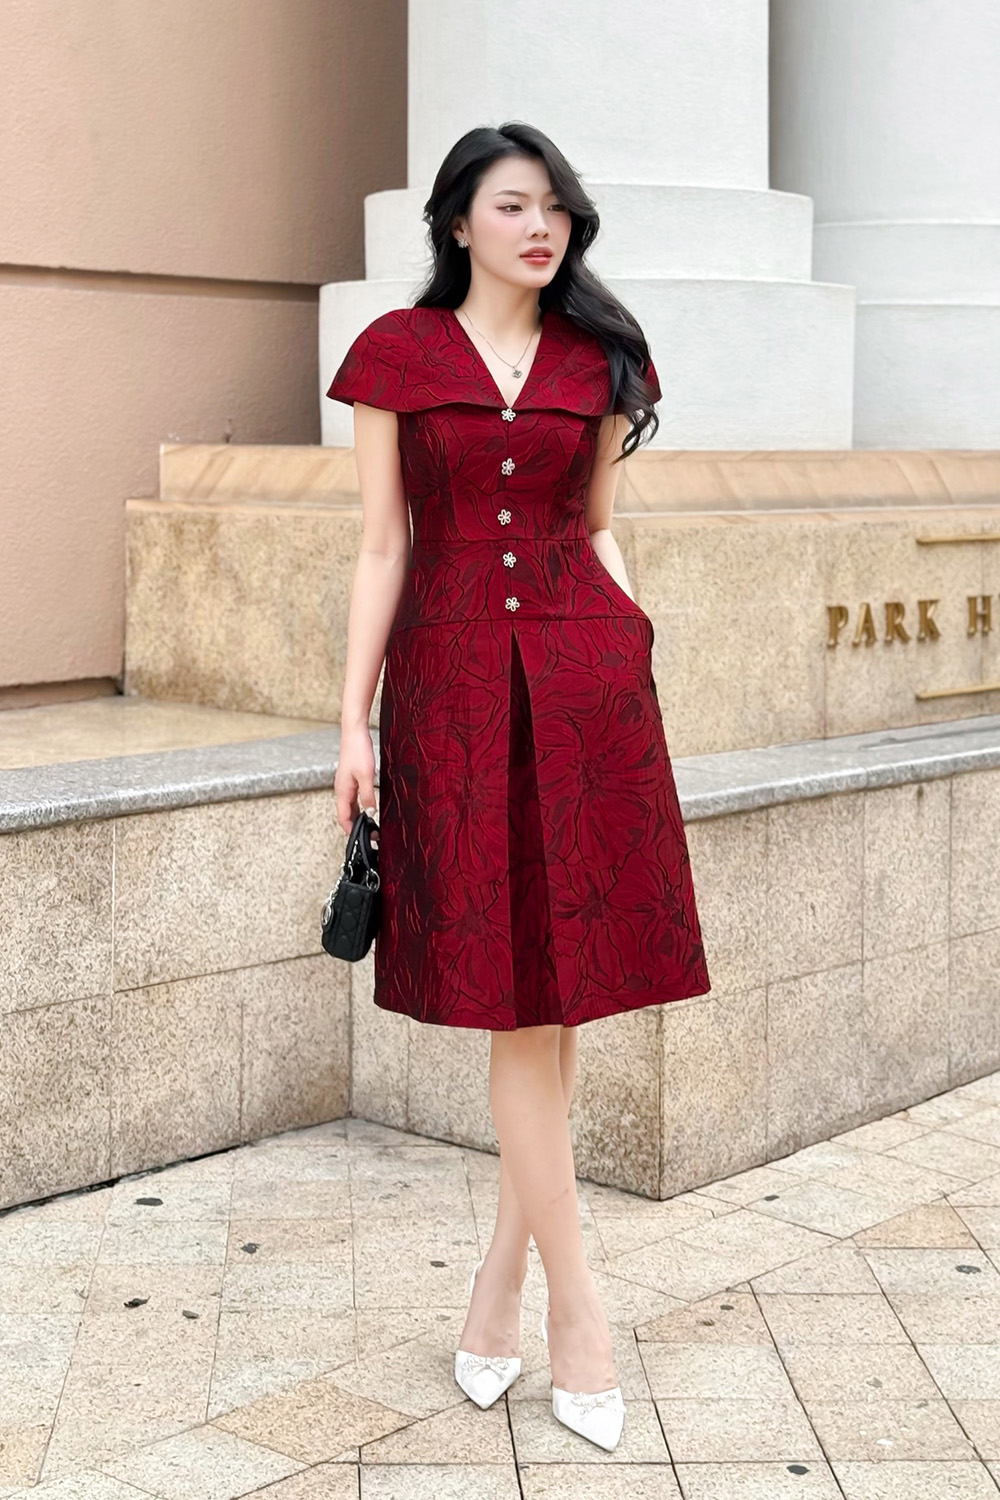 Trương Gia Nghê diện đồ cá tính, Trịnh Sảng bị chê khi mặc váy hồng - Thời  trang sao